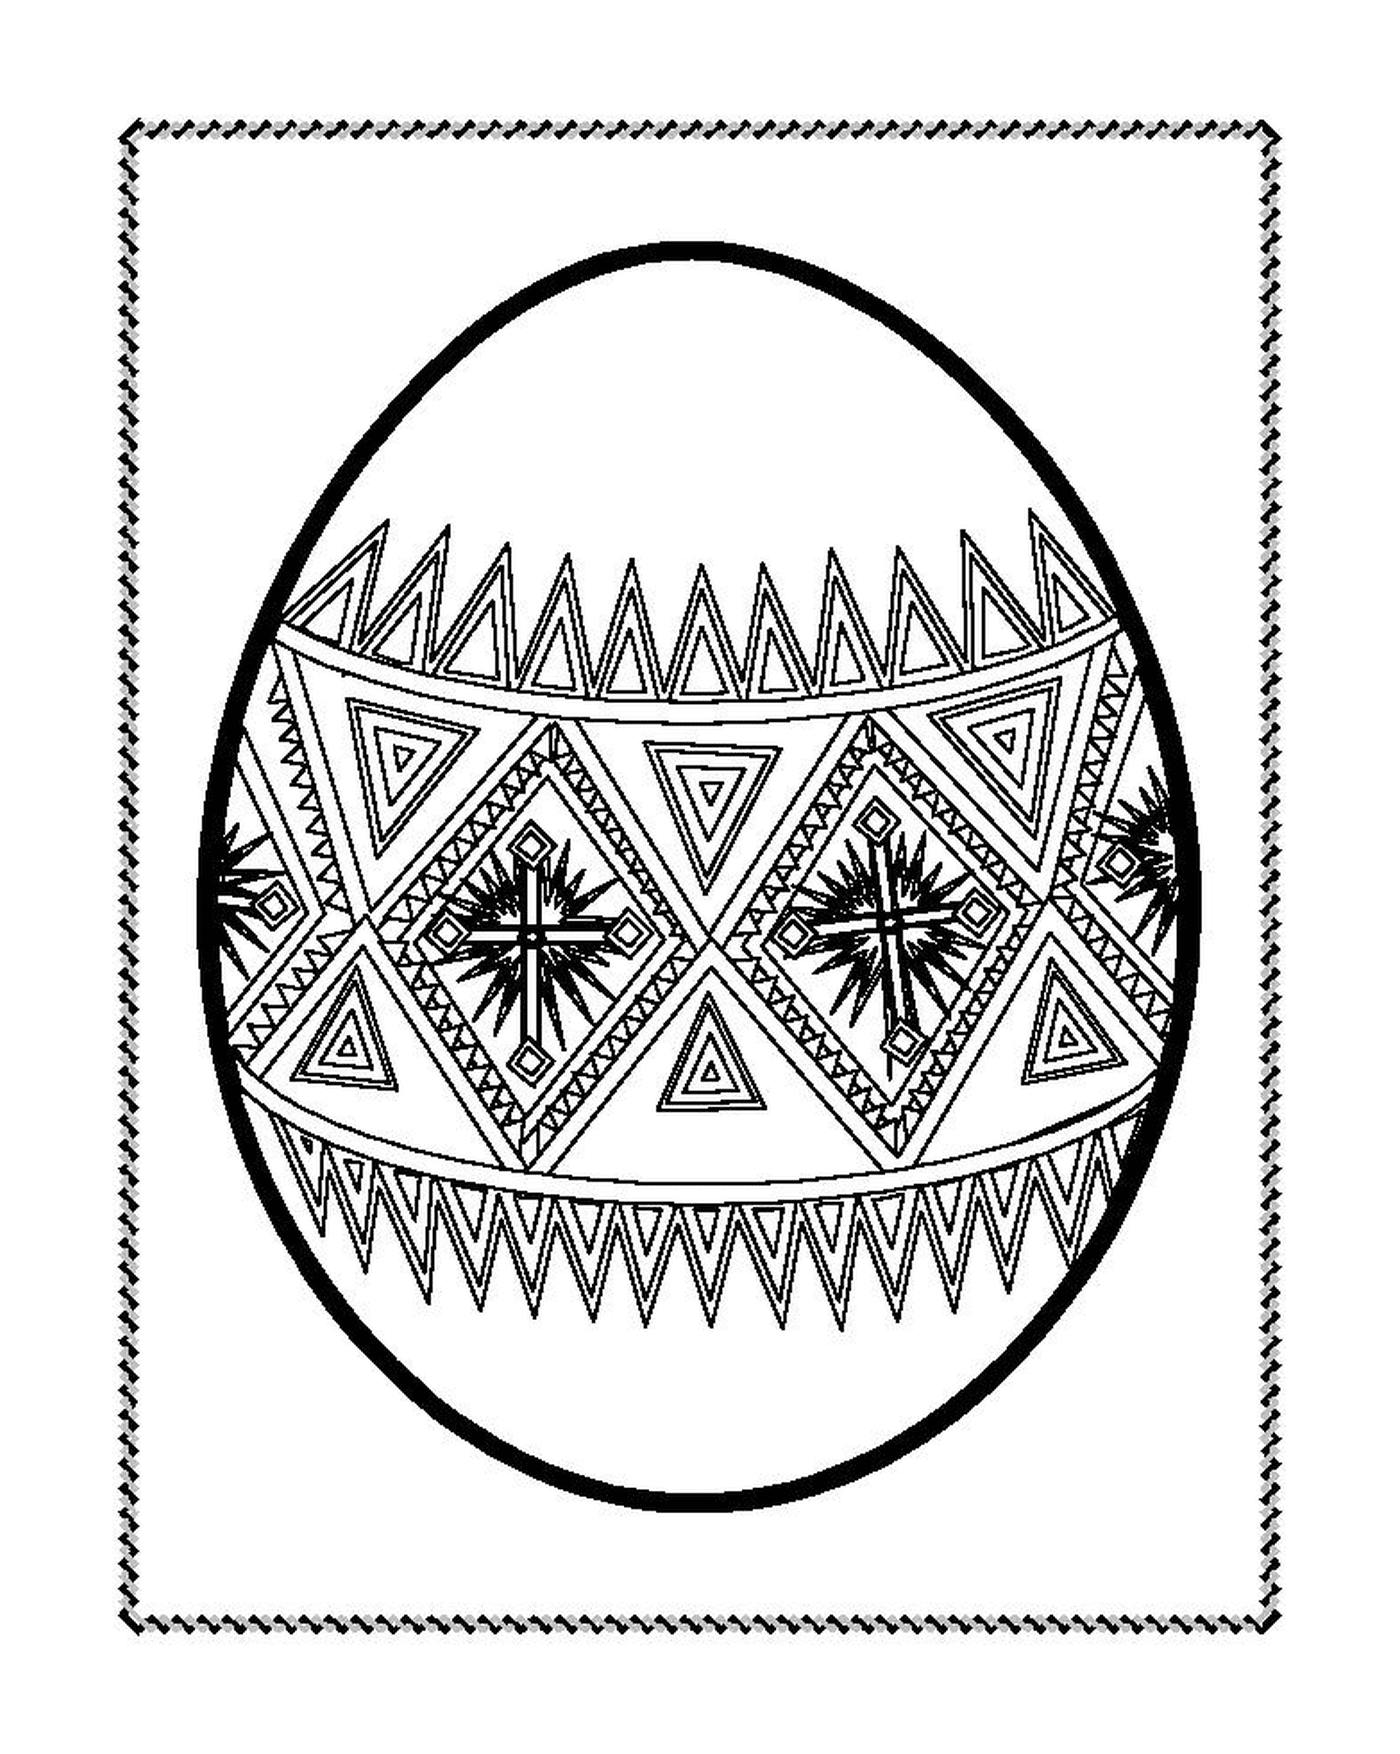  एक ईस्टर के अंडे से सजाया जाता है 